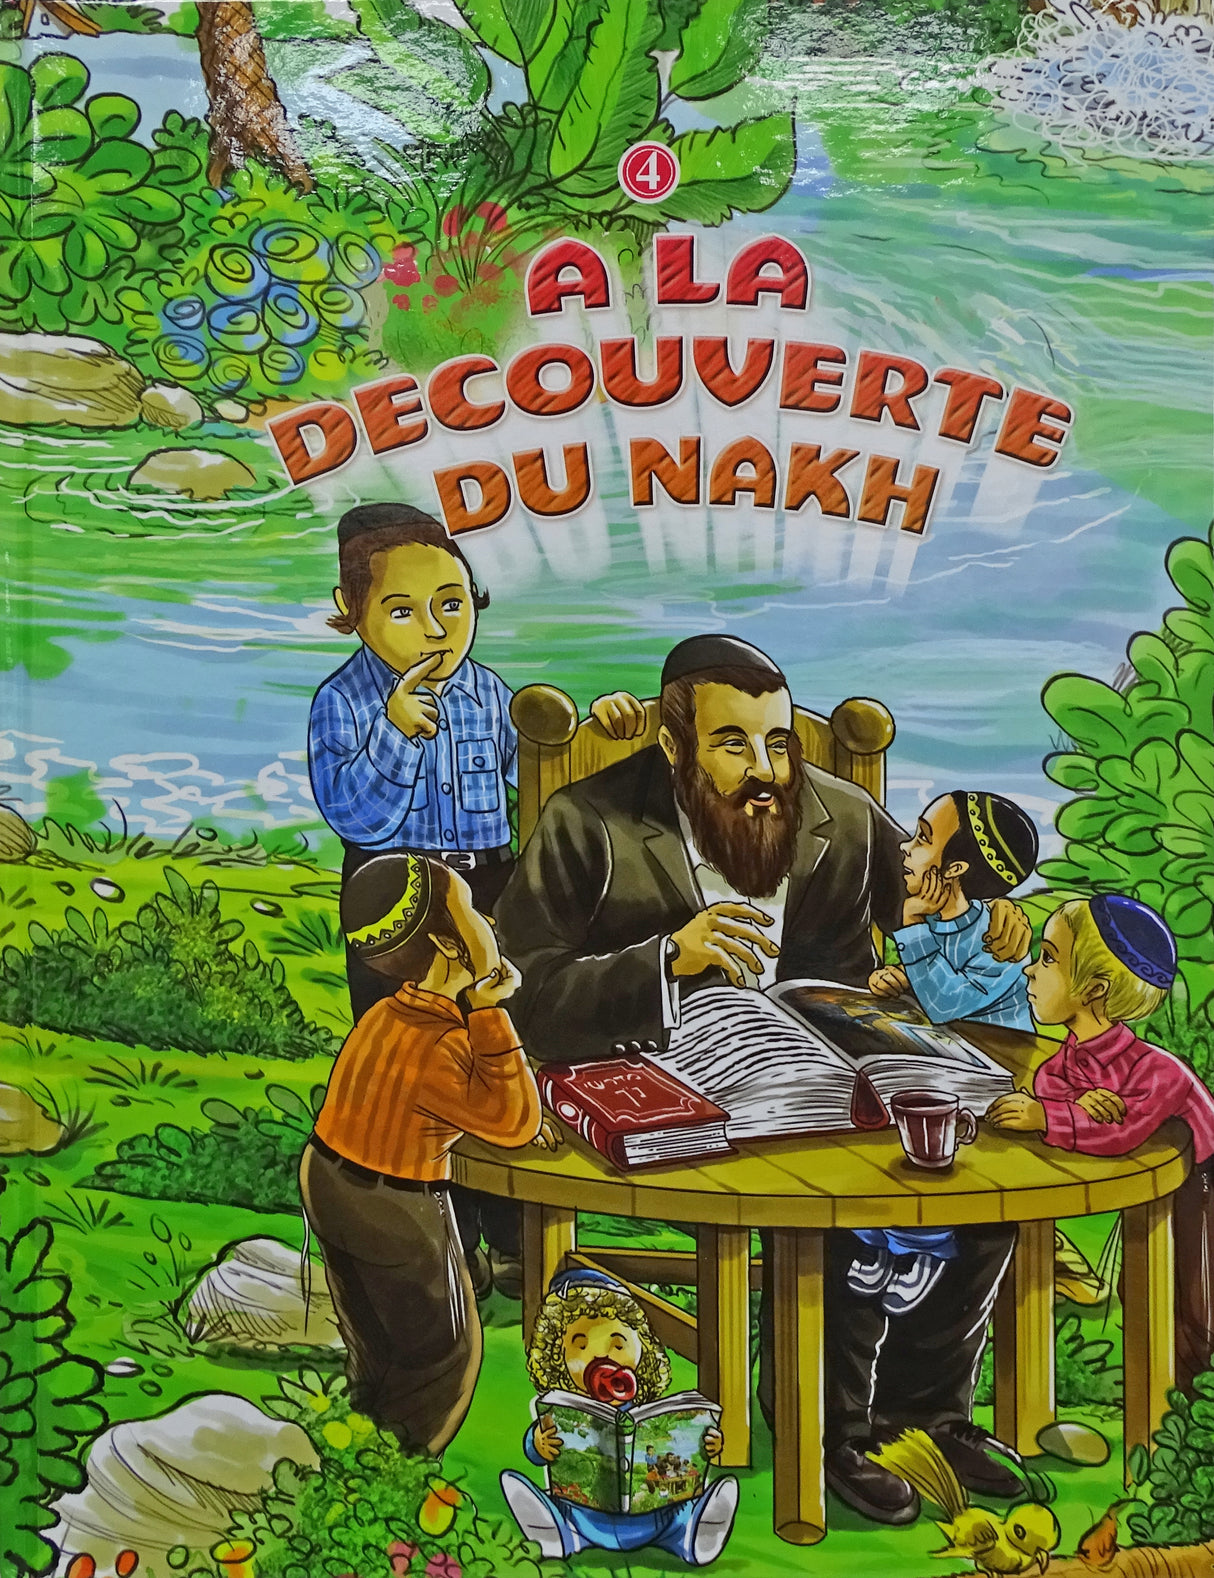 A La Decouverte Du Nakh vol 4